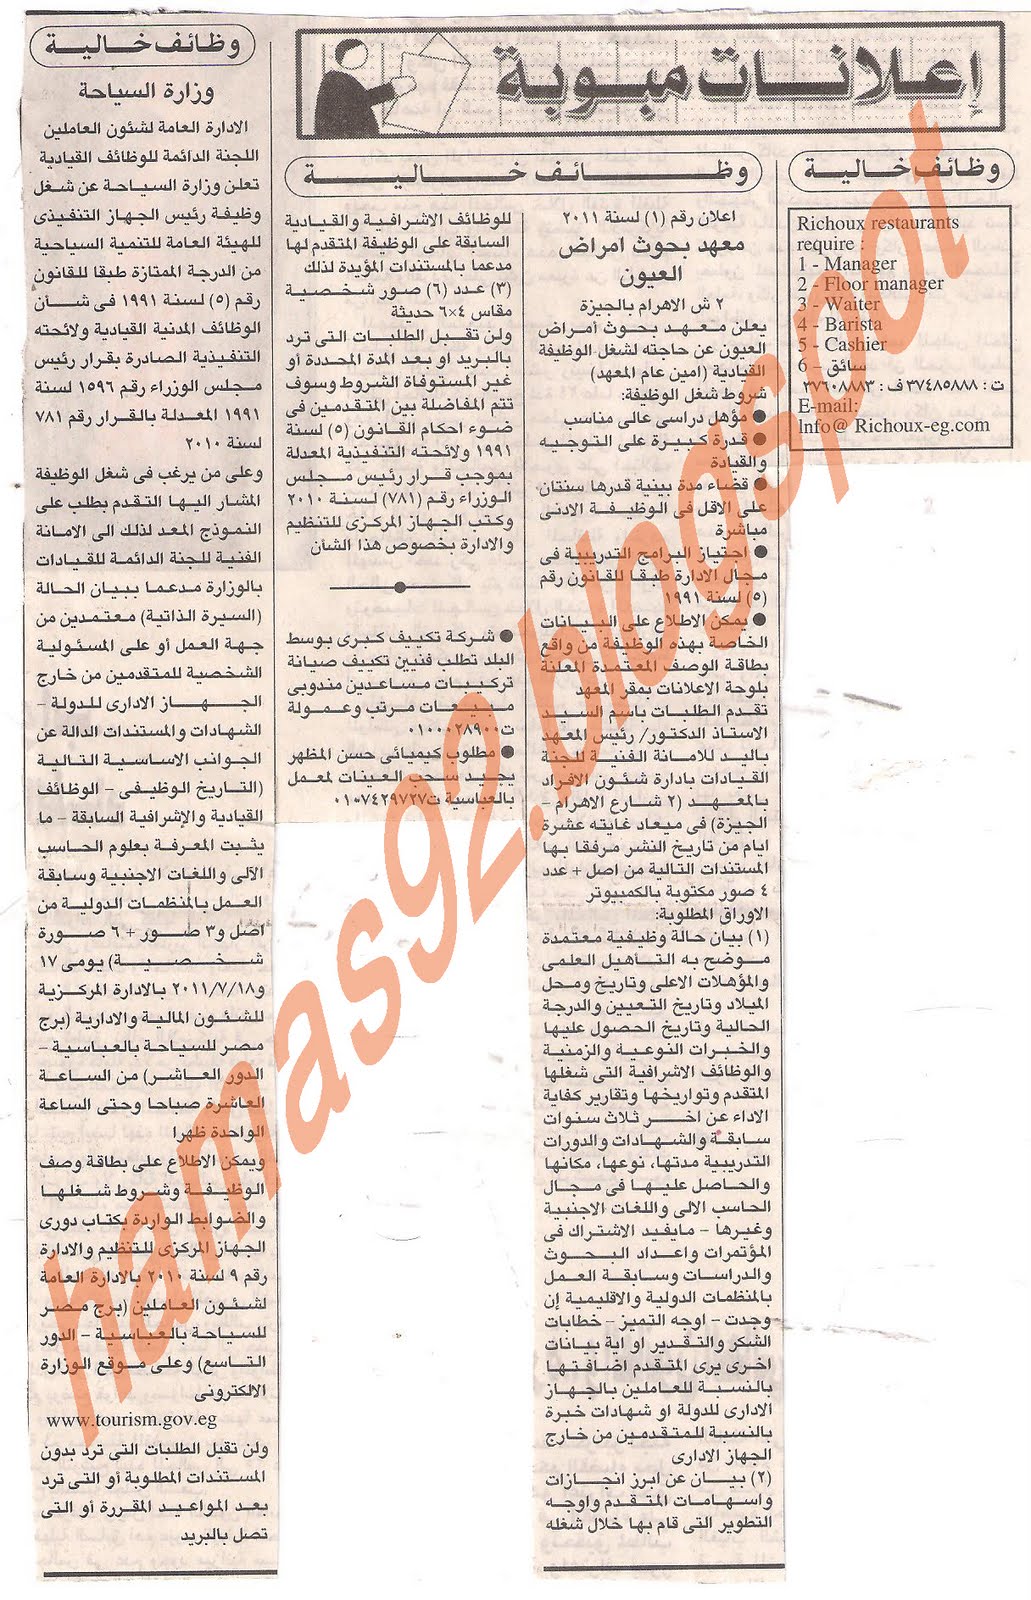 وظائف خالية من جريدة الاهرام السبت 9 يوليو 2011 Picture+001